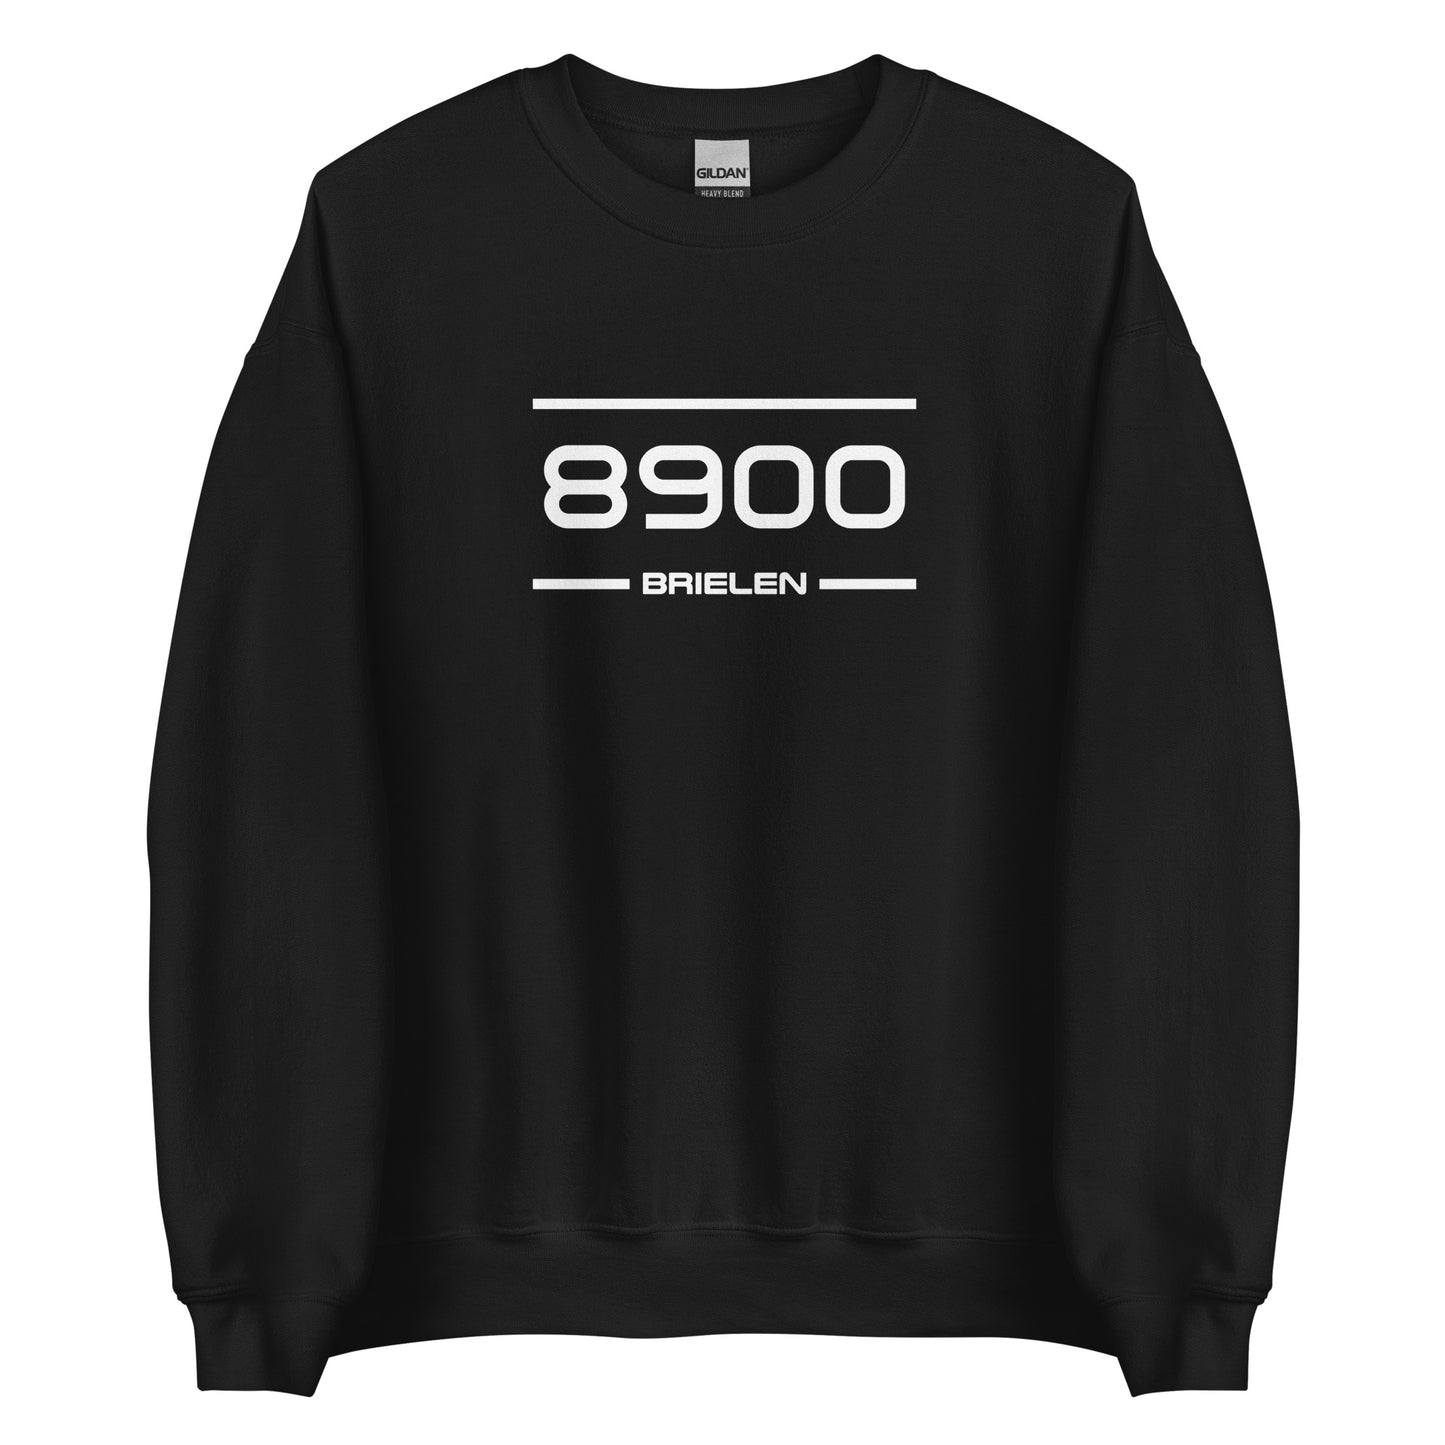 Sweater - 8900 - Brielen (M/V)